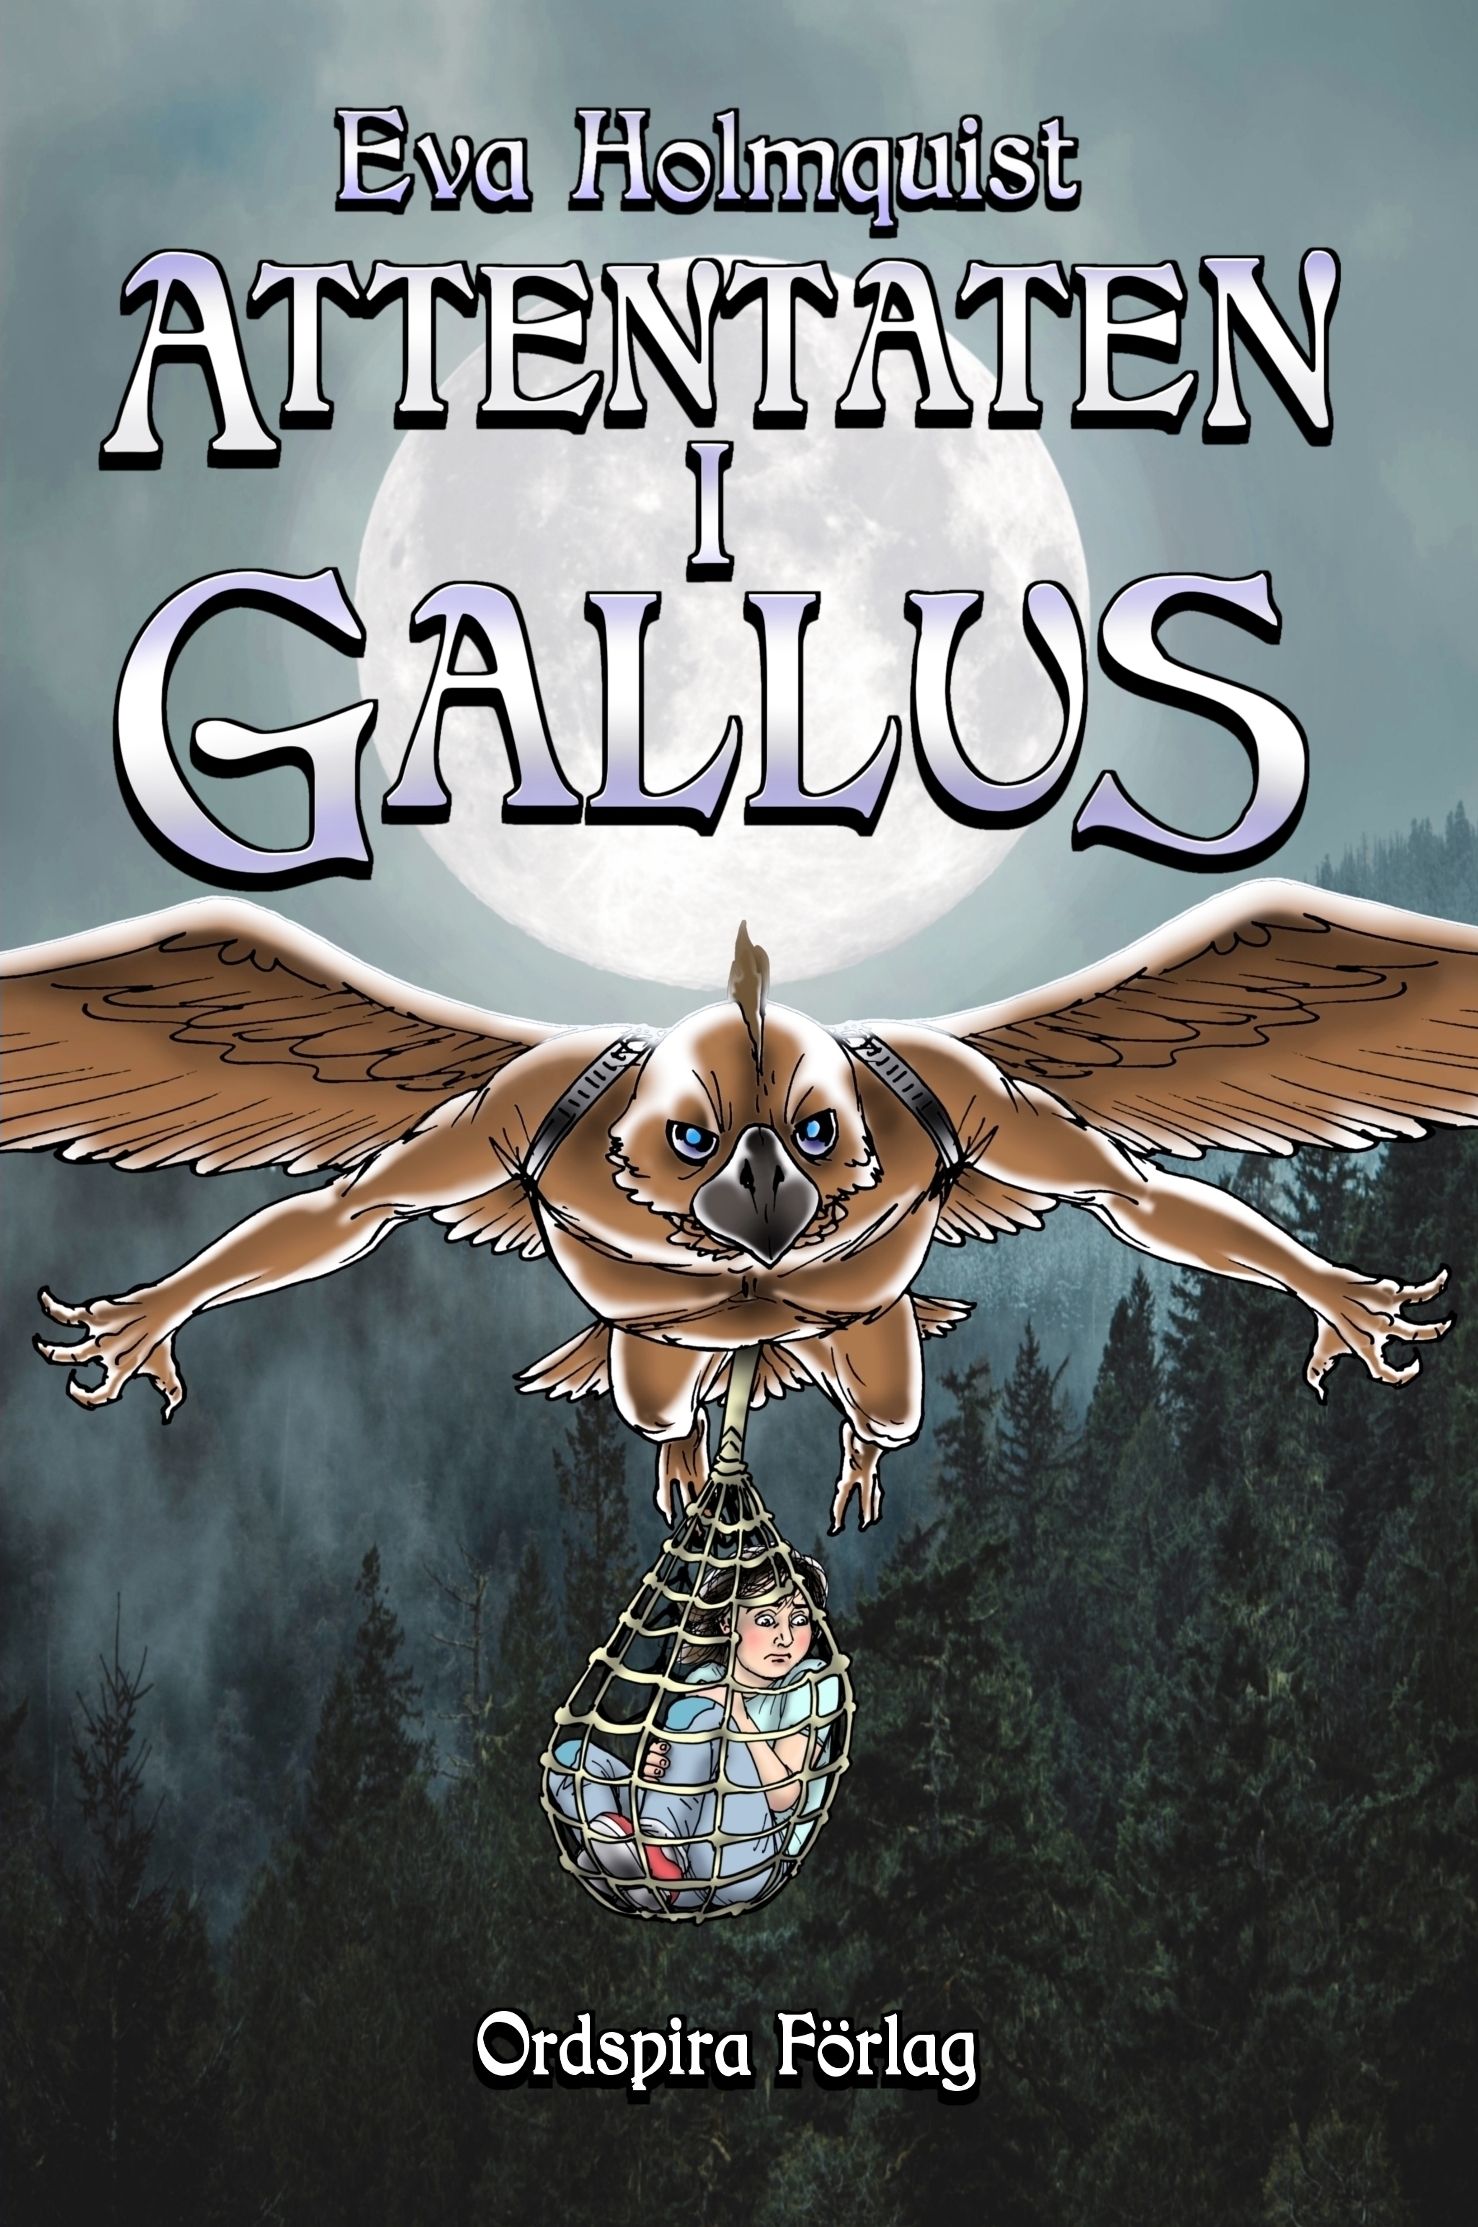 Attentaten i Gallus, eBook by Eva Holmquist